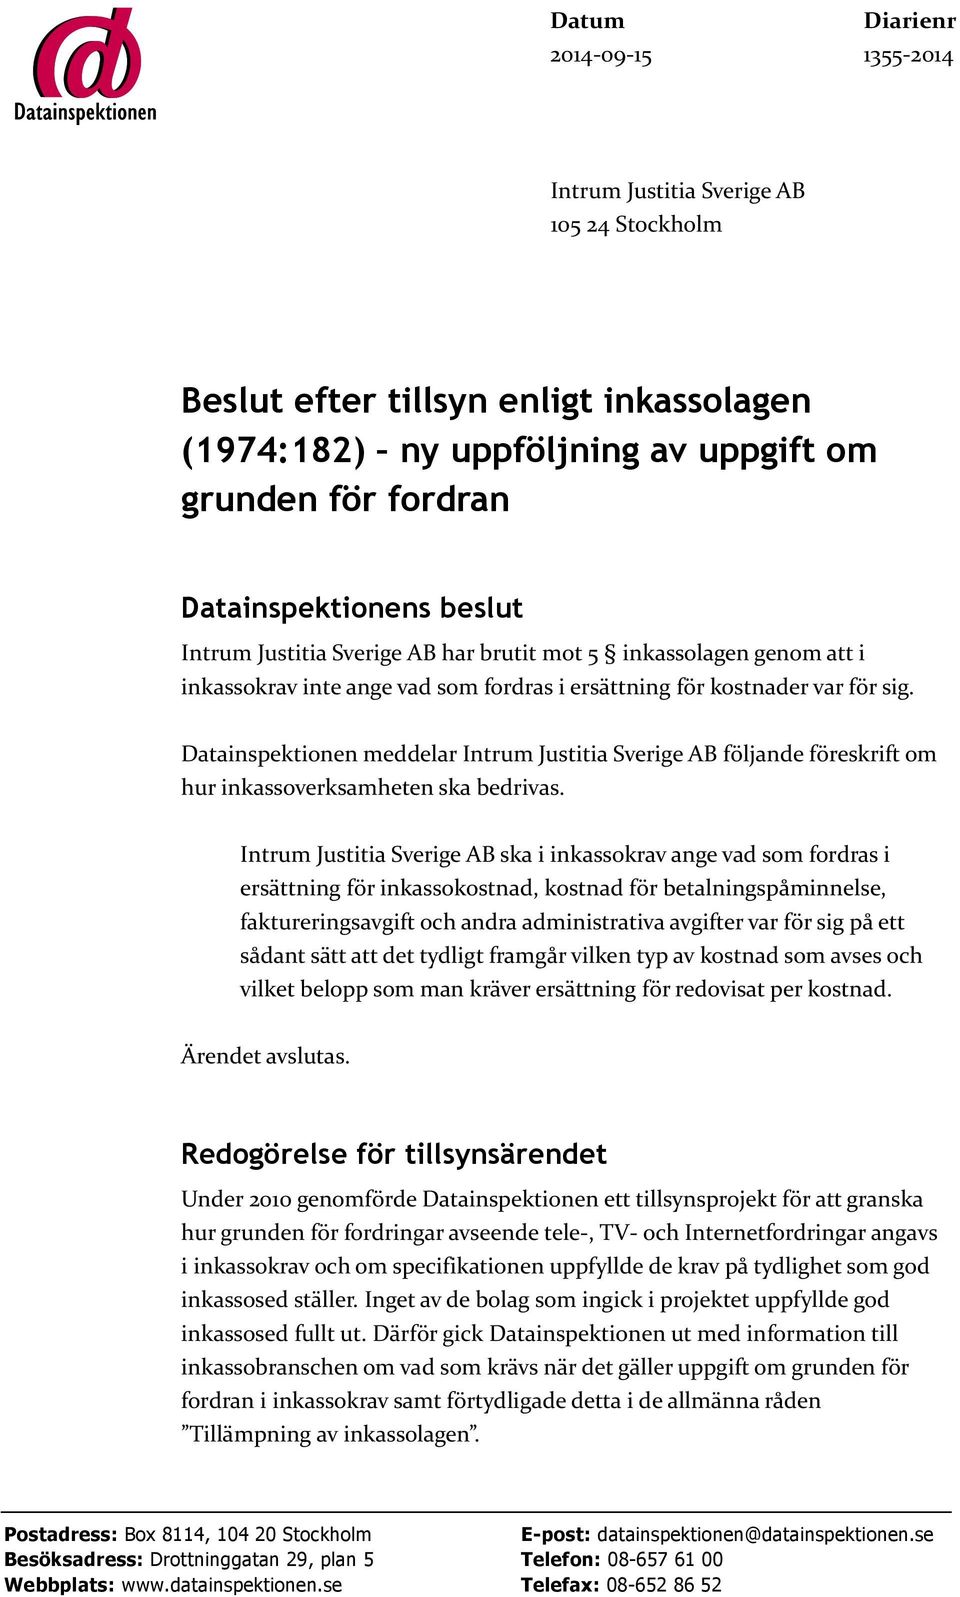 Datainspektionen meddelar Intrum Justitia Sverige AB följande föreskrift om hur inkassoverksamheten ska bedrivas.